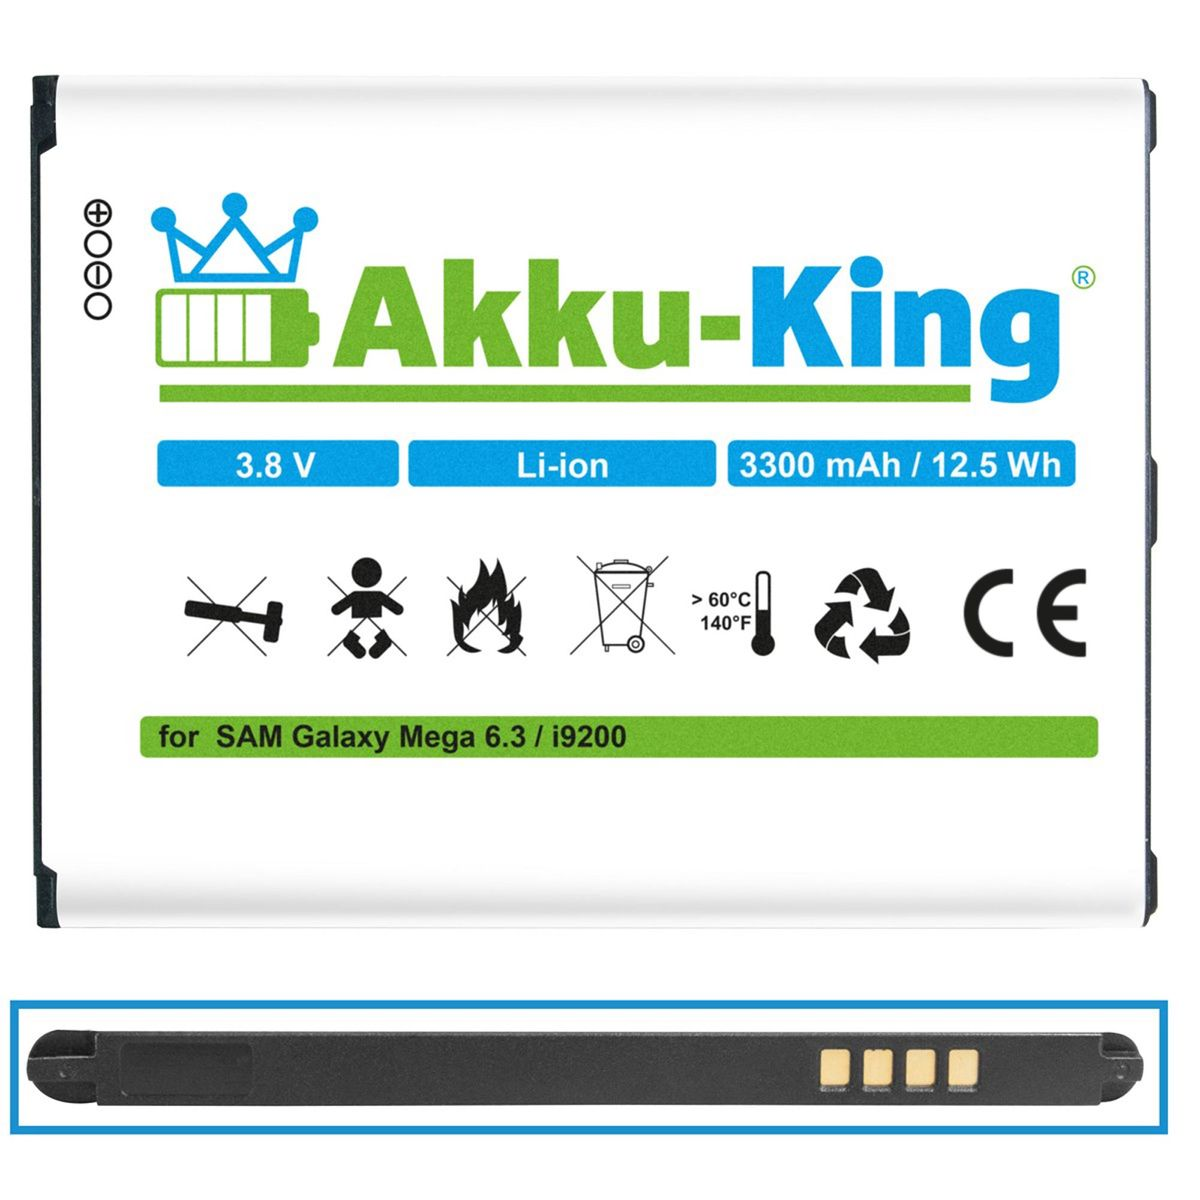 EB-B700BE 3.8 Akku Samsung Volt, AKKU-KING Handy-Akku, mit 3300mAh Li-Ion kompatibel